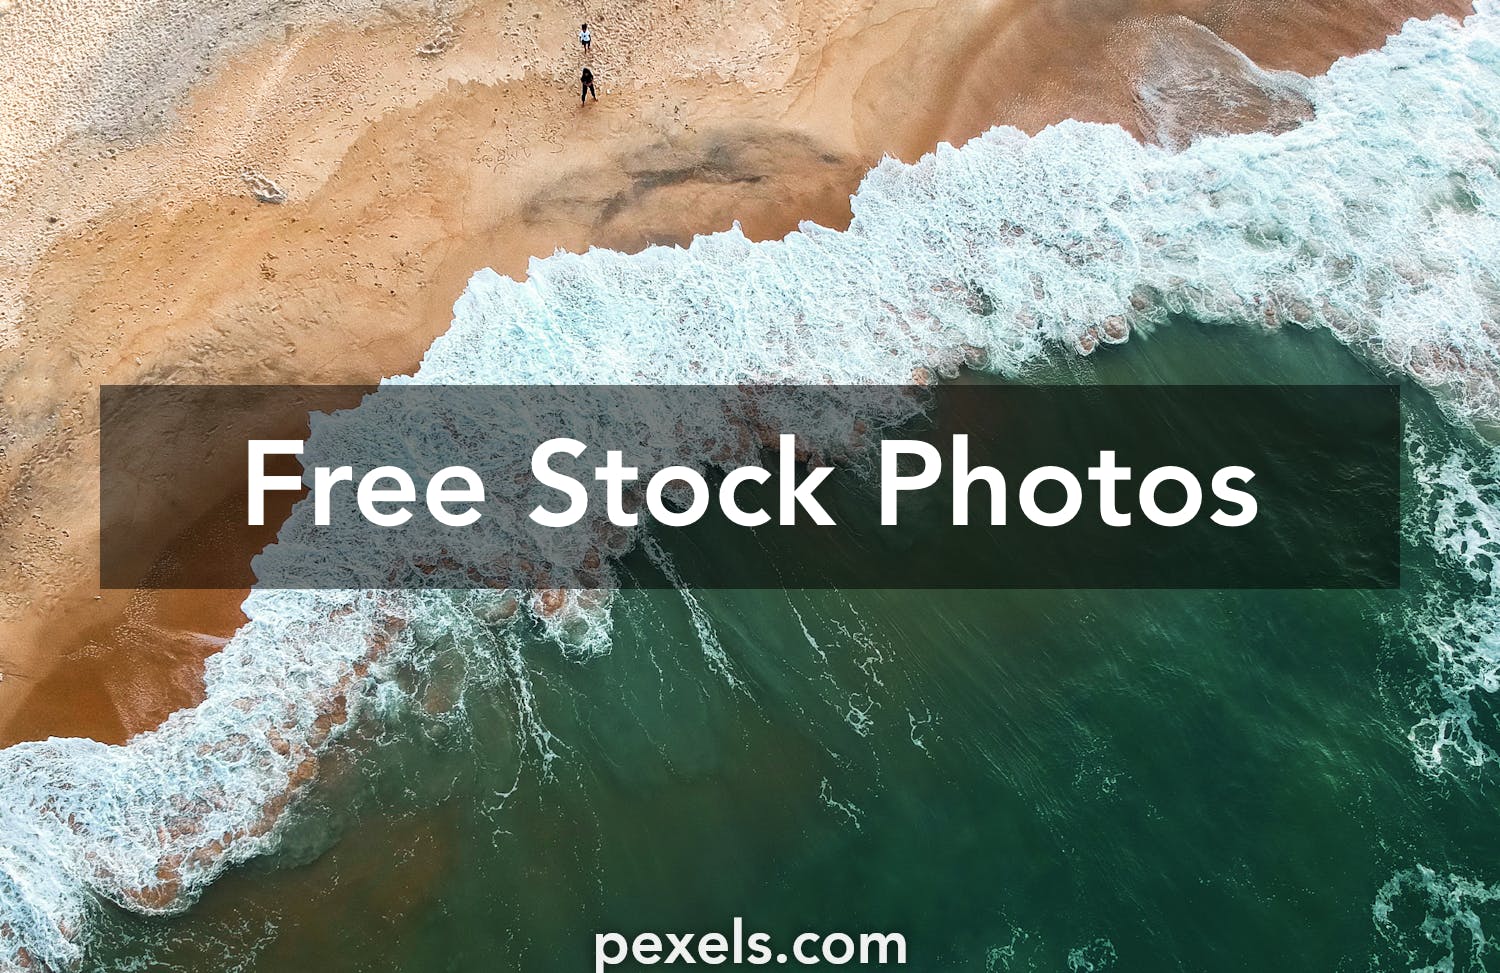 Mac Wallpapers Pexels Free Stock Photos Images, Photos, Reviews